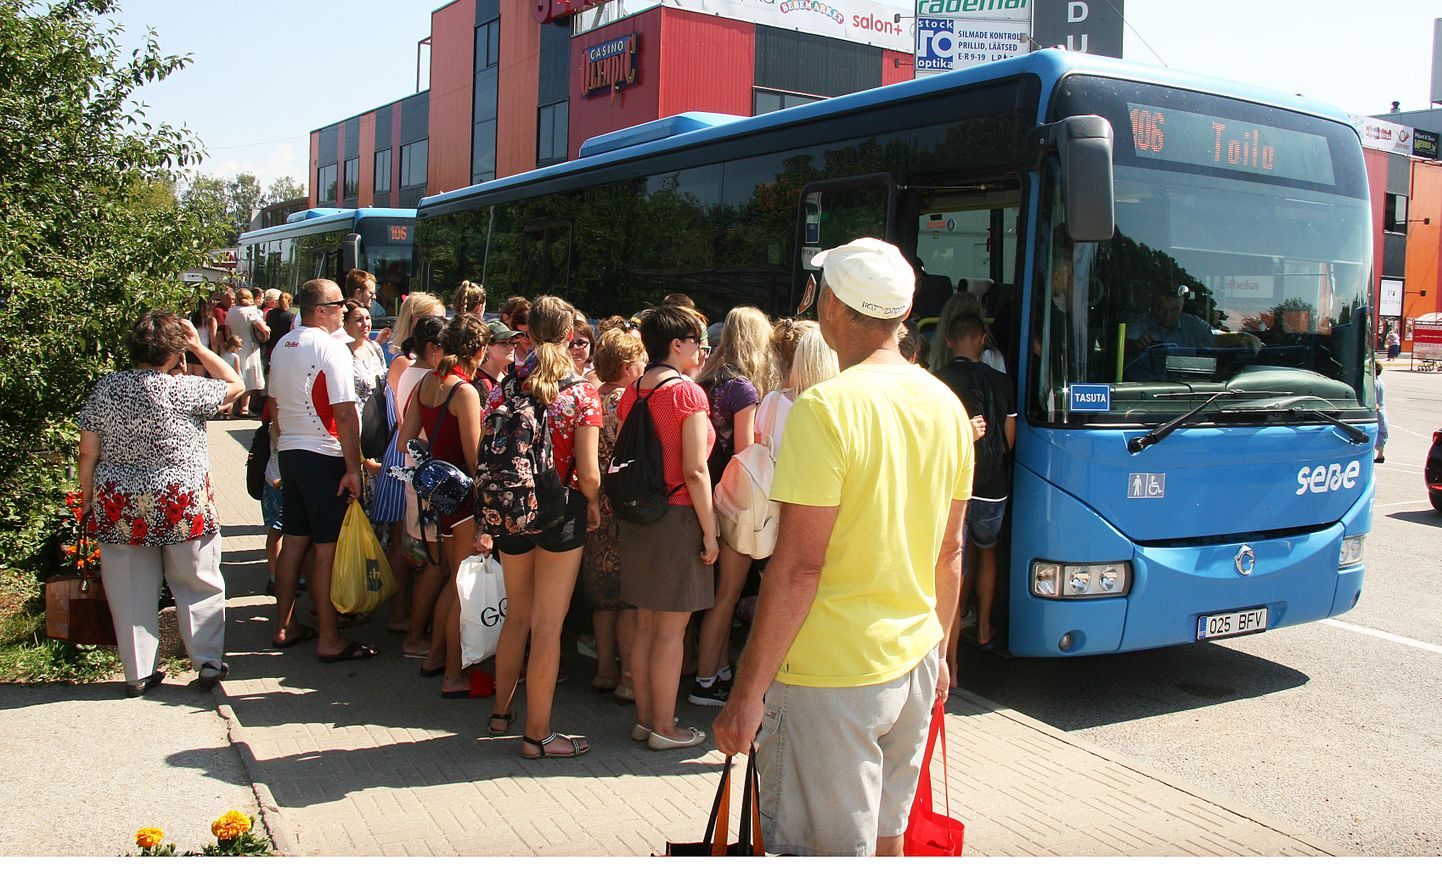 Jõhvi-Toila liinil sõitsid bussid kuumadel päevadel paarikaupa.

PEETER LILLEVÄLI